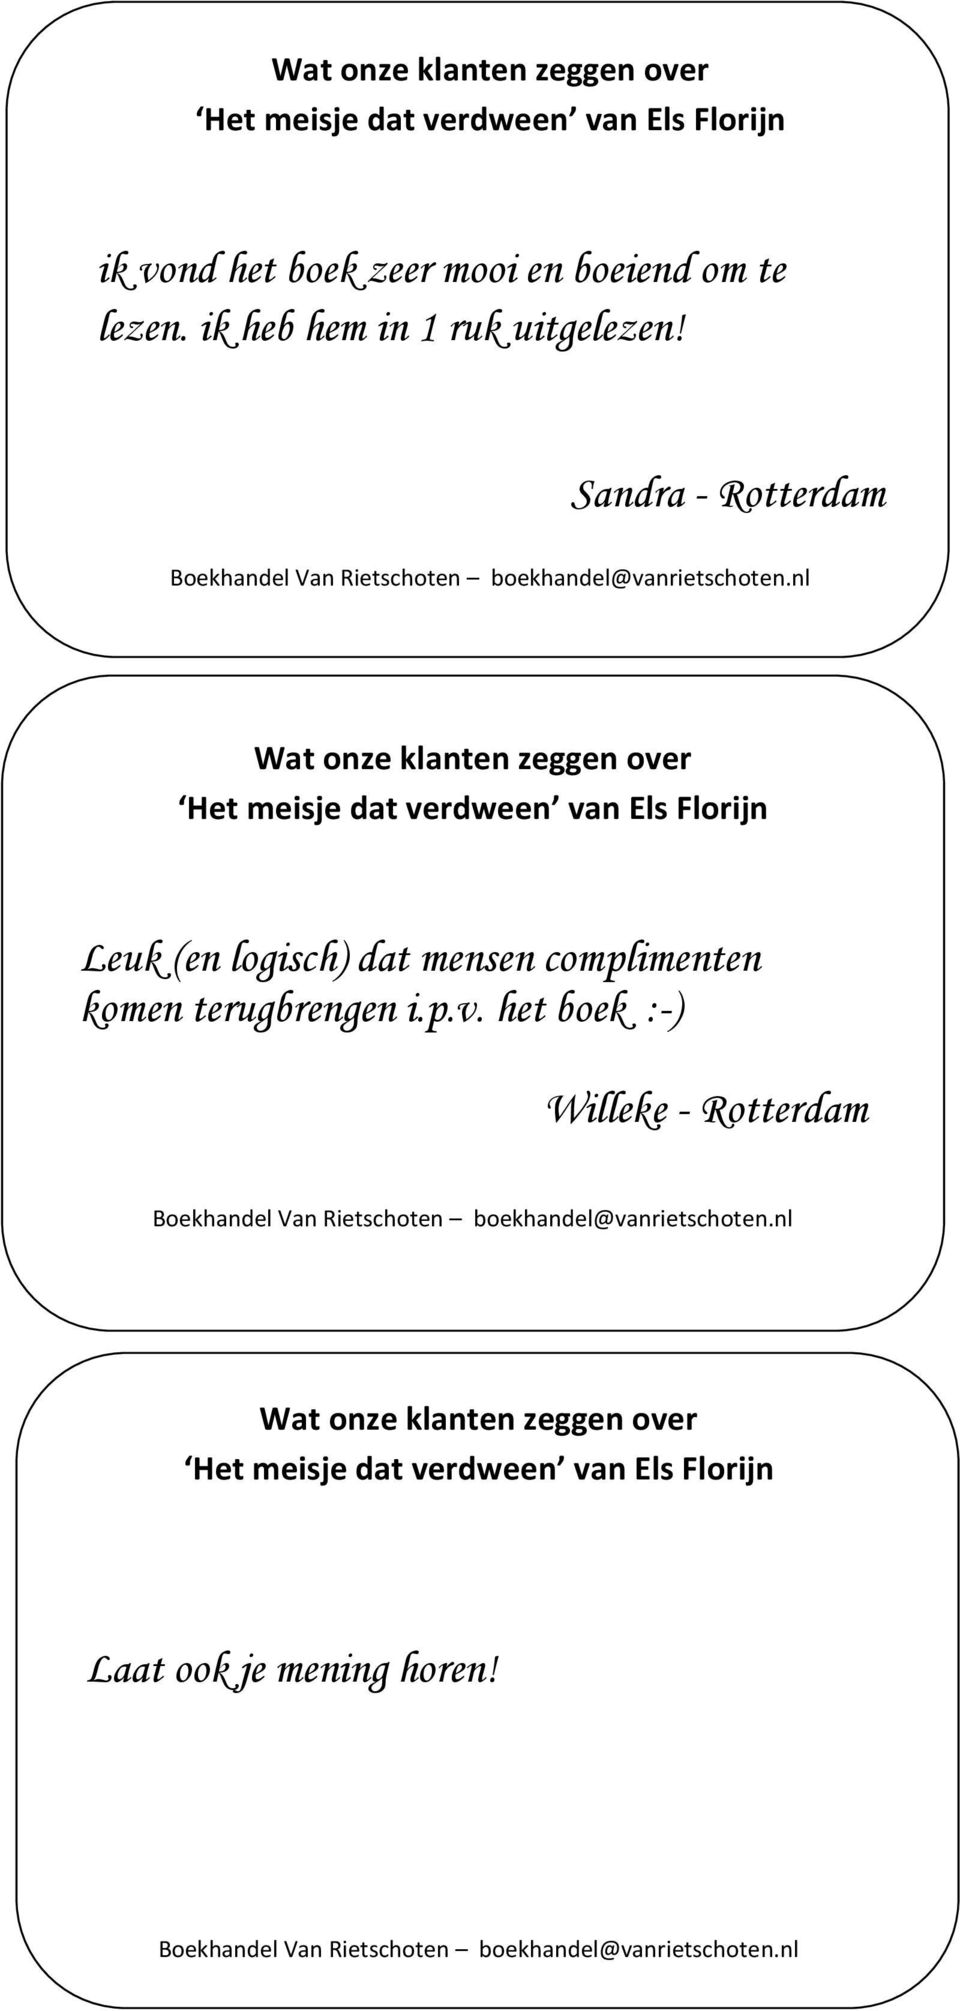 Sandra - Rotterdam Wat onze klanten zeggen over Leuk (en logisch) dat mensen